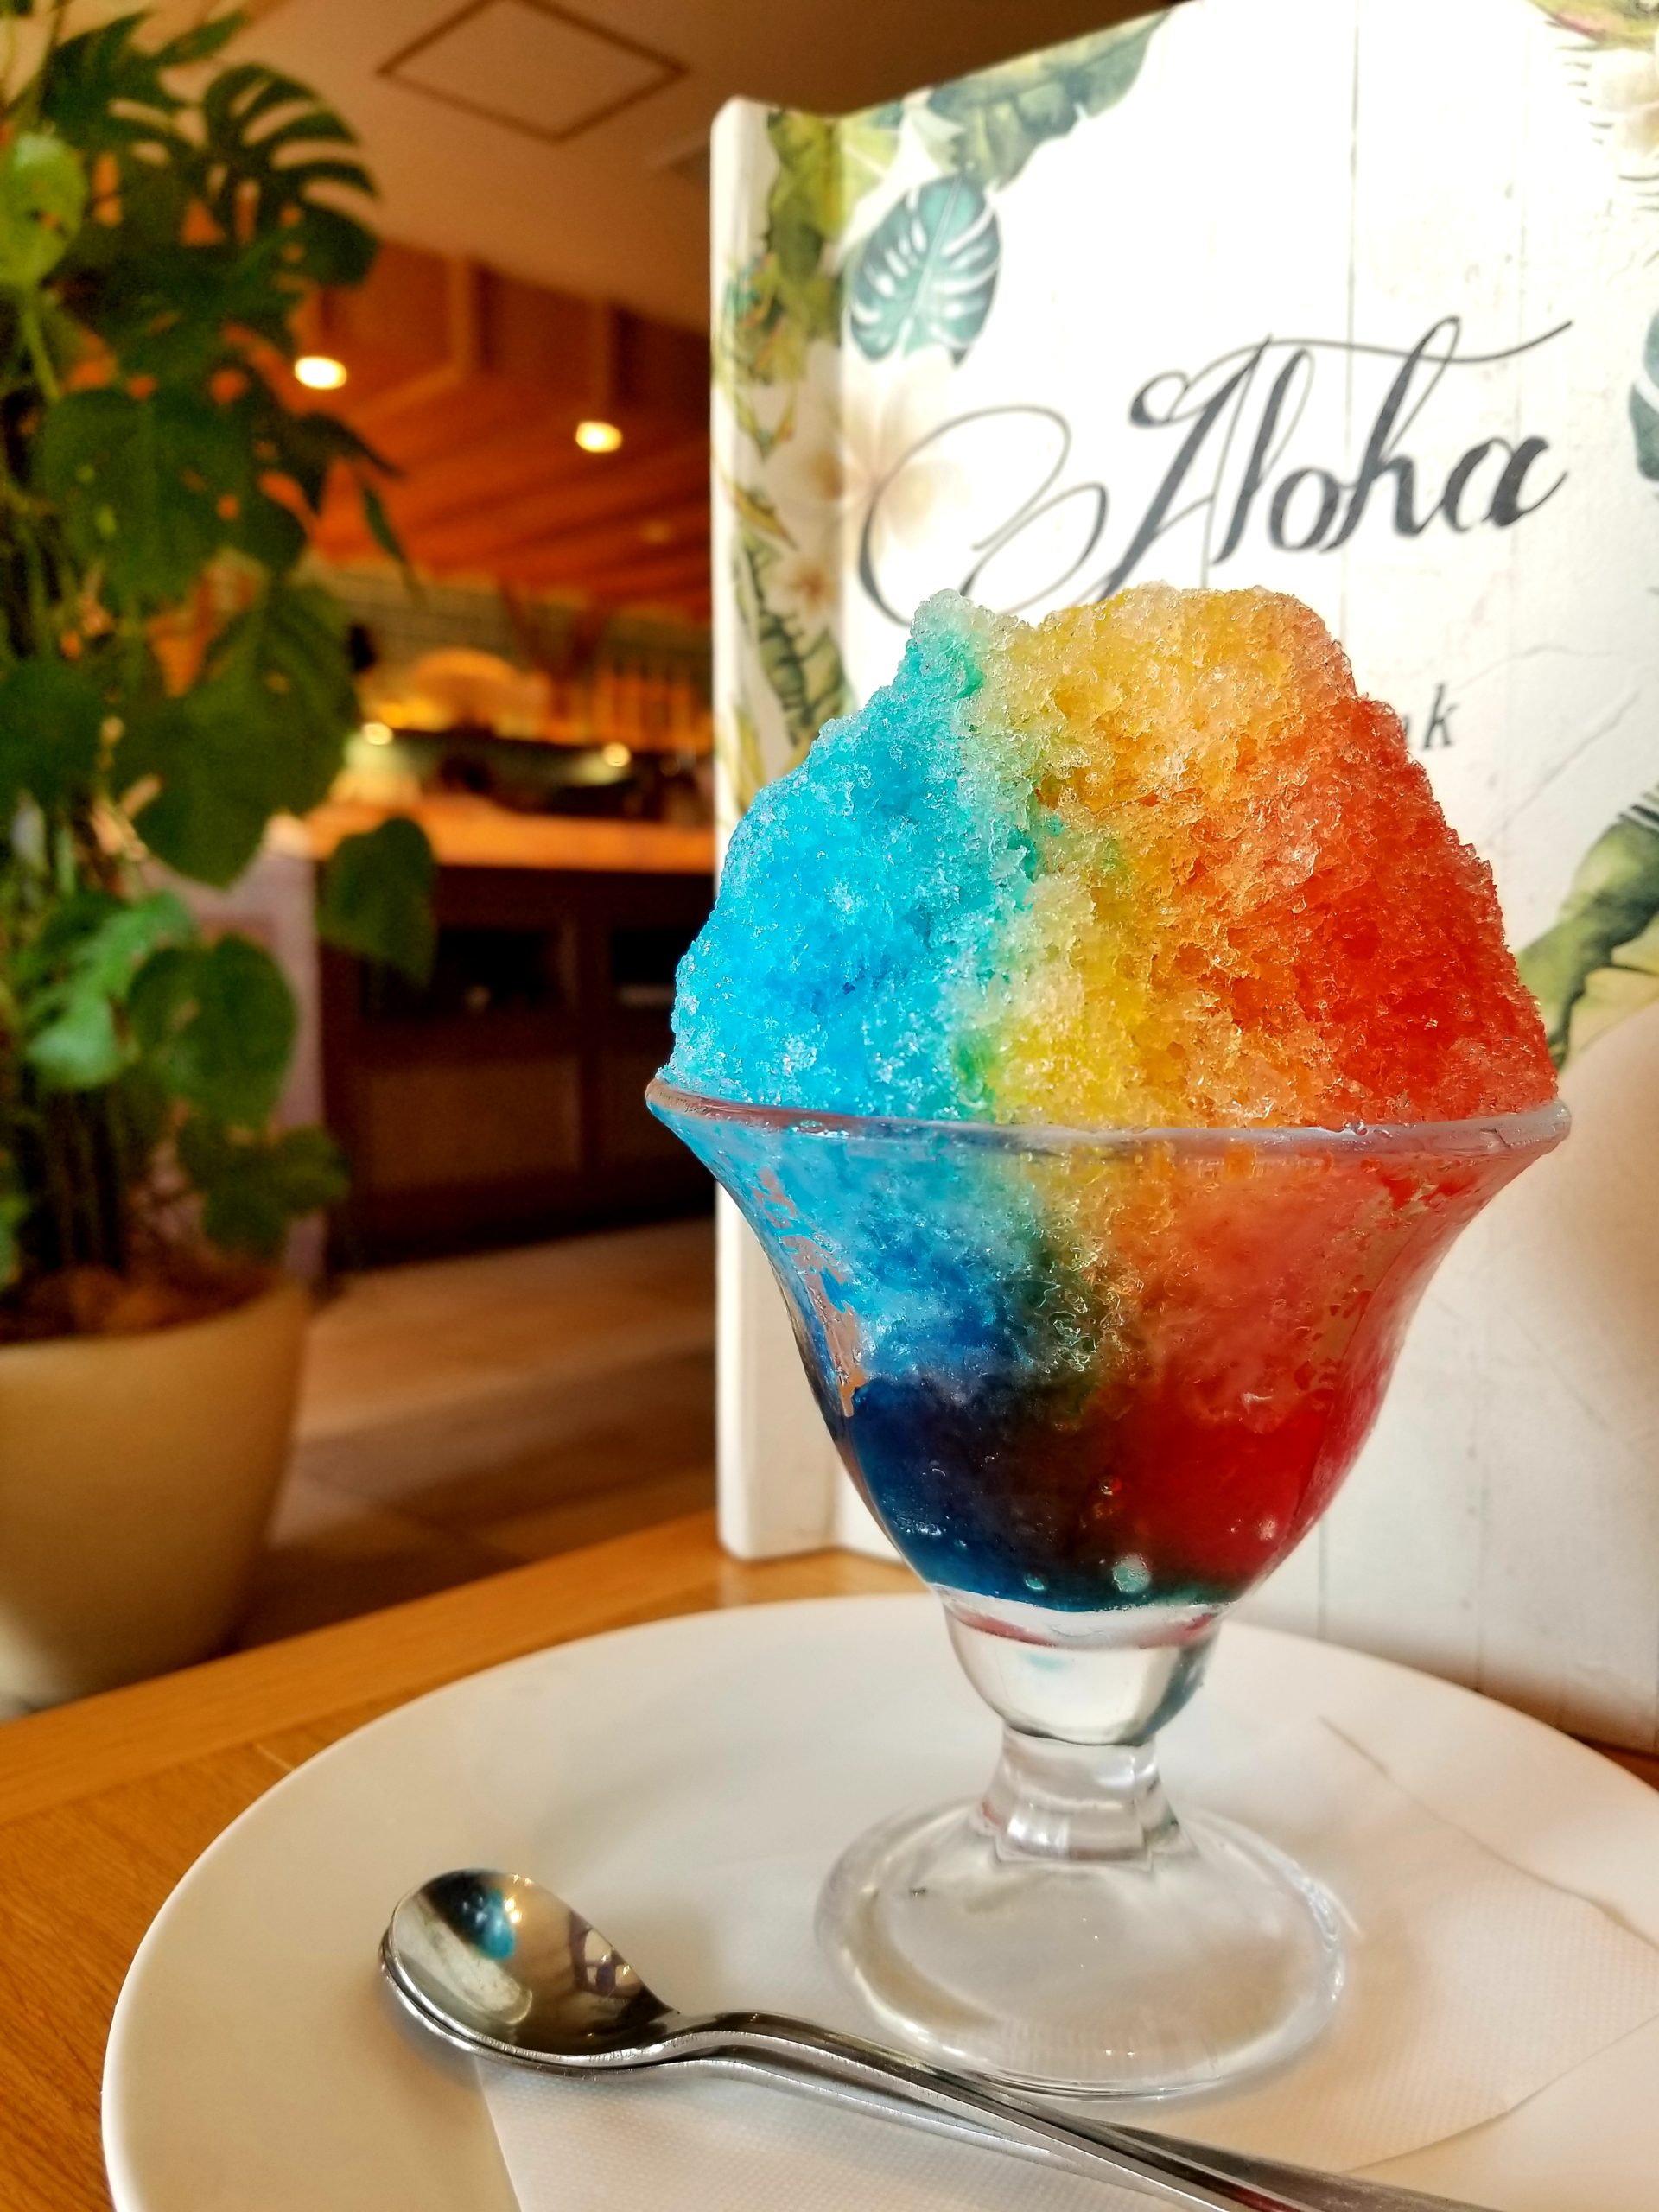 インスタ映え横浜カフェ すかいらーく系列のハワイアンレストランがおしゃれすぎた たらこブログ